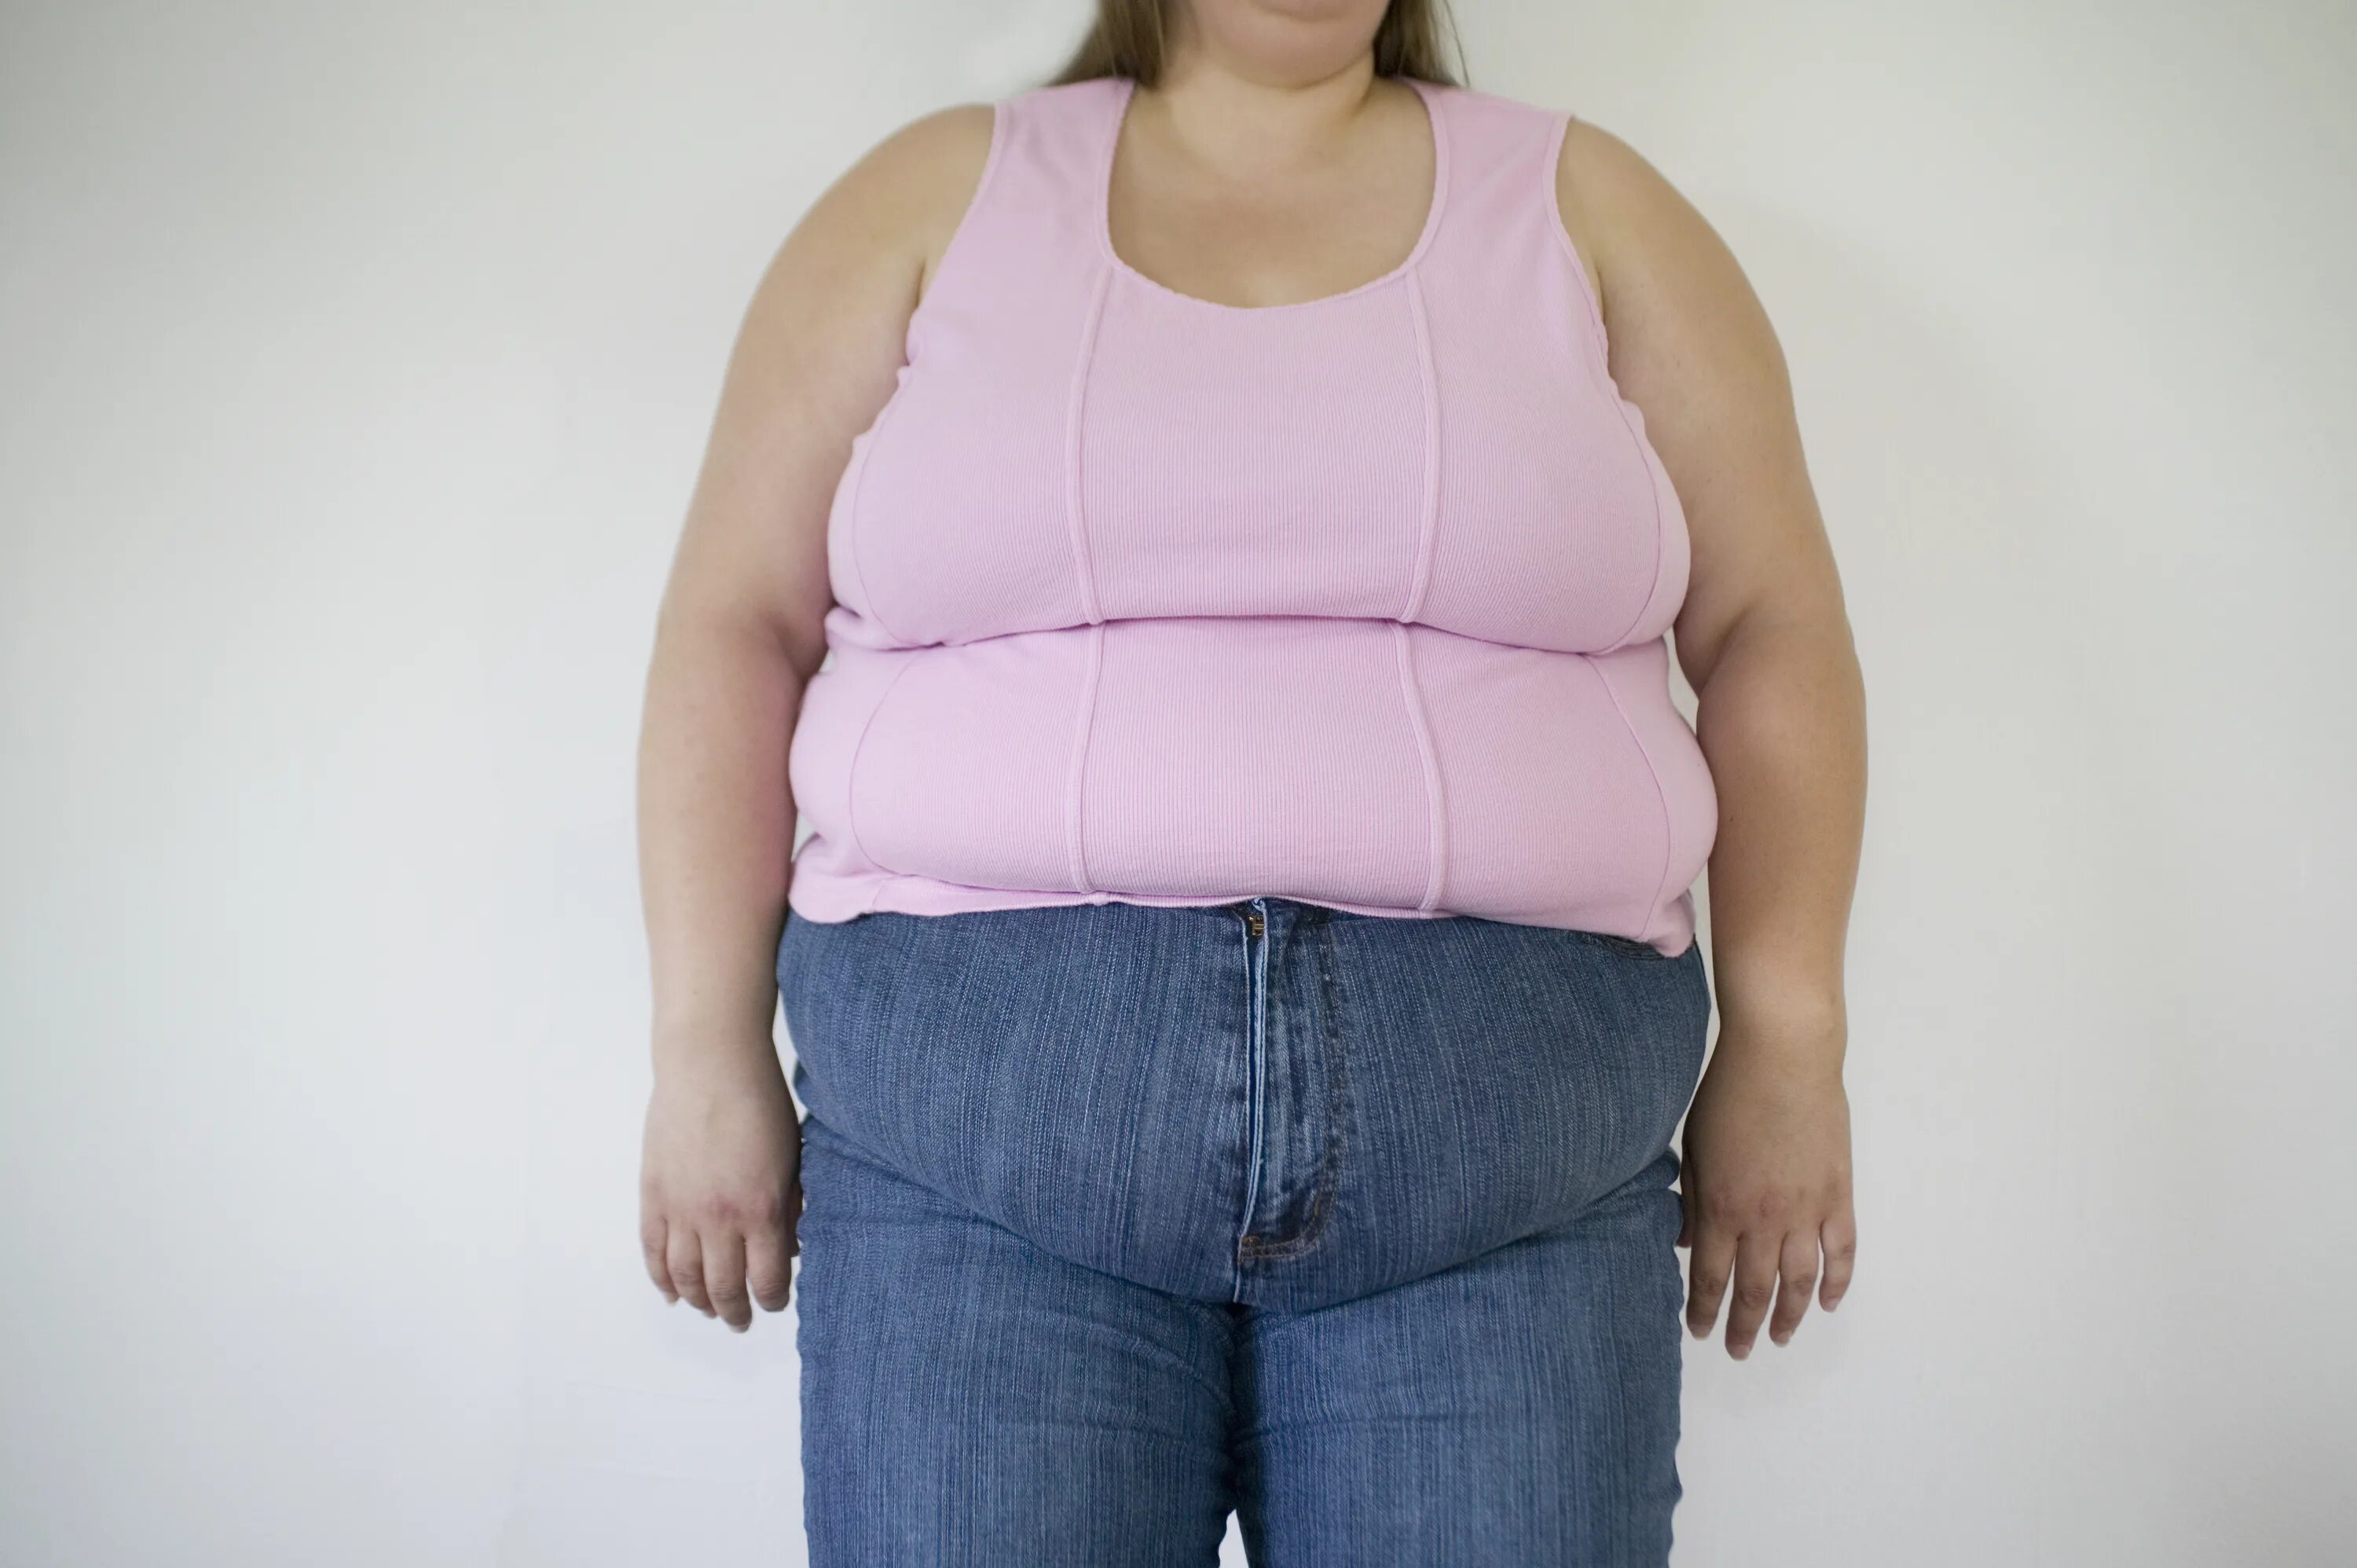 Люди с избыточным весом. Ожирение у девушек. Женщина с лишним весом.